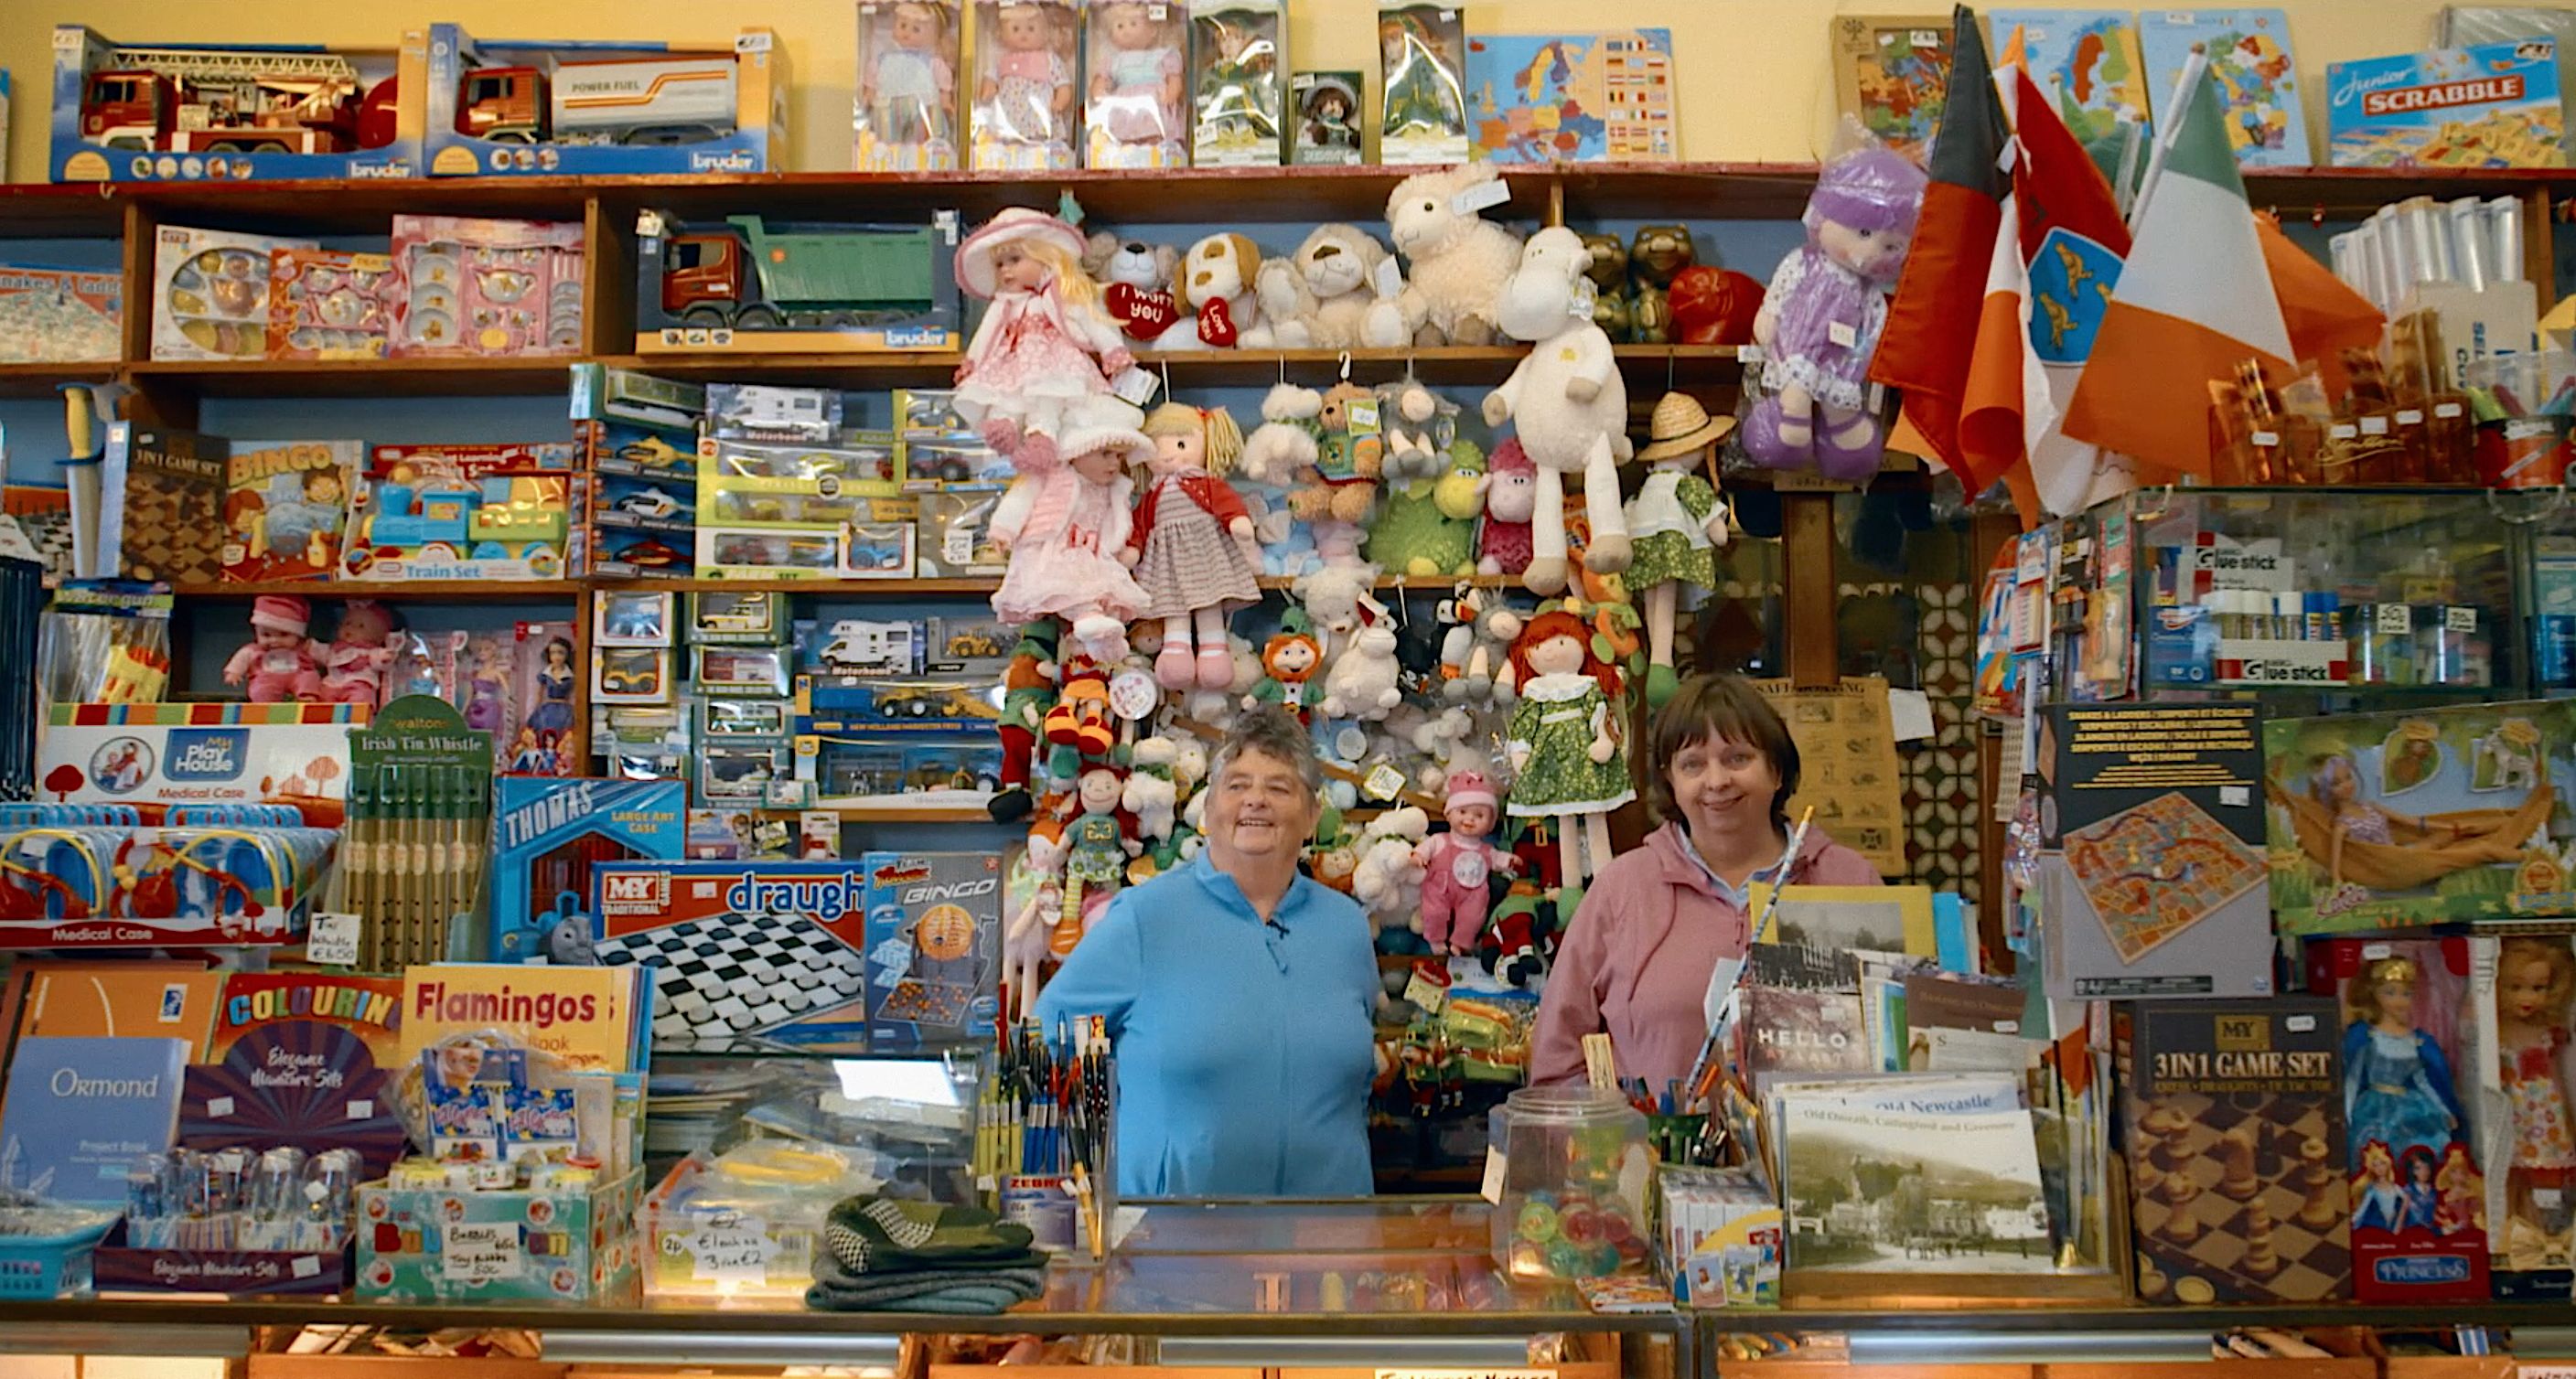 The Toy Shop landscape image